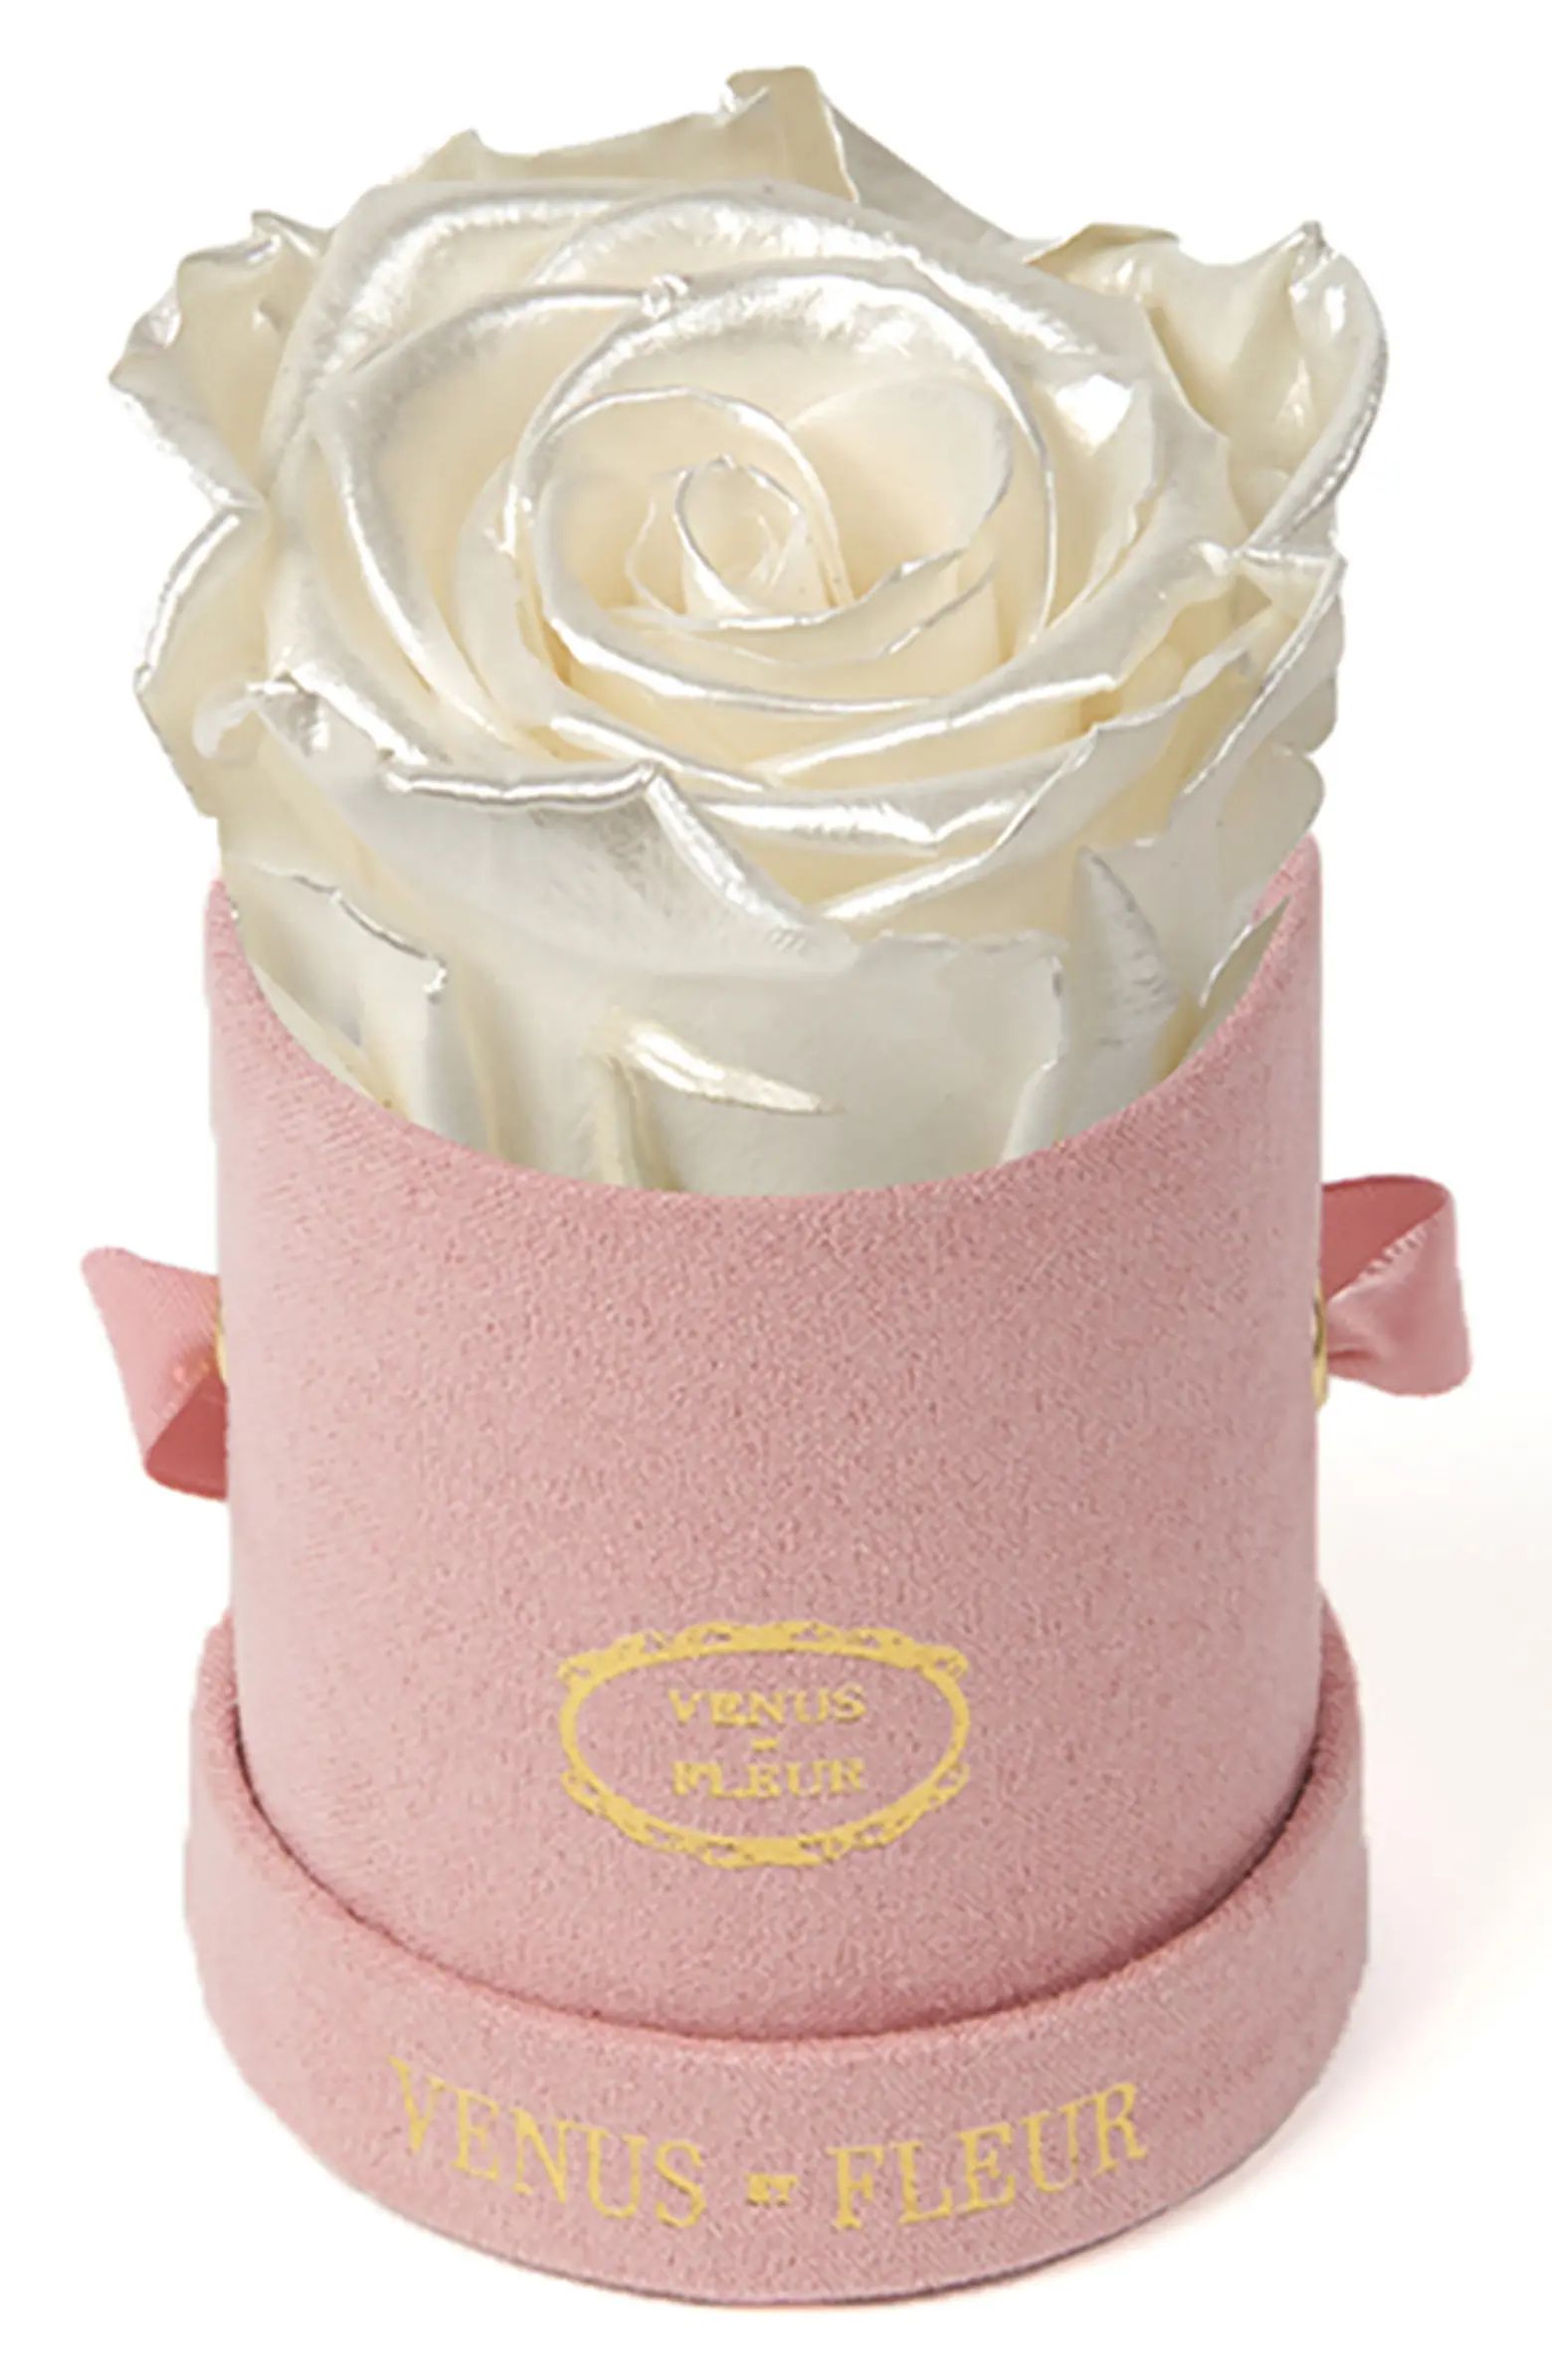 Venus ET Fleur Classic Le Mini™ Round Eternity Rose | Nordstrom | Nordstrom